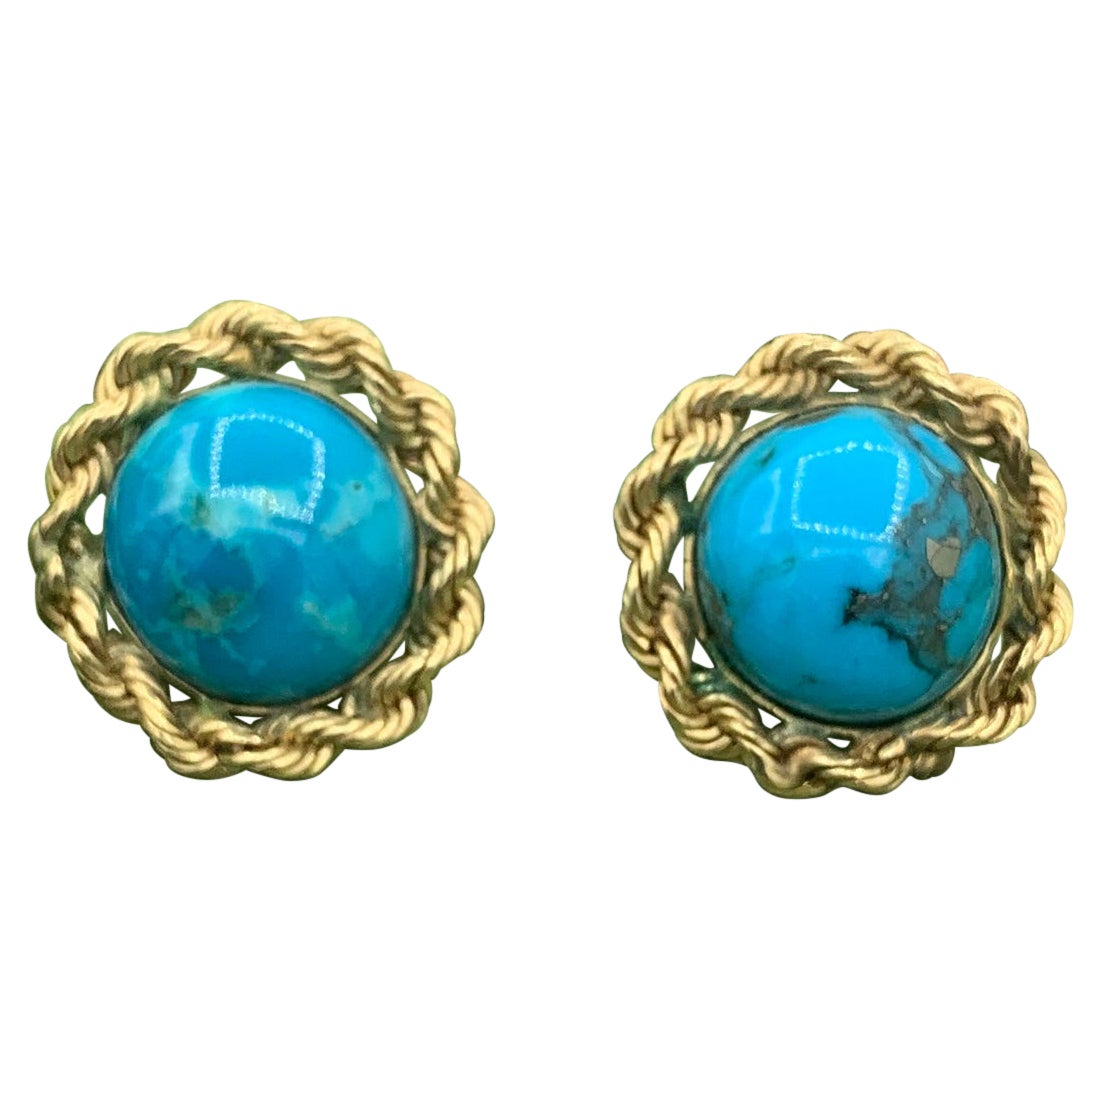 Boucles d'oreilles rétro à bordure tressée en or 14 carats et turquoise, milieu du siècle dernier